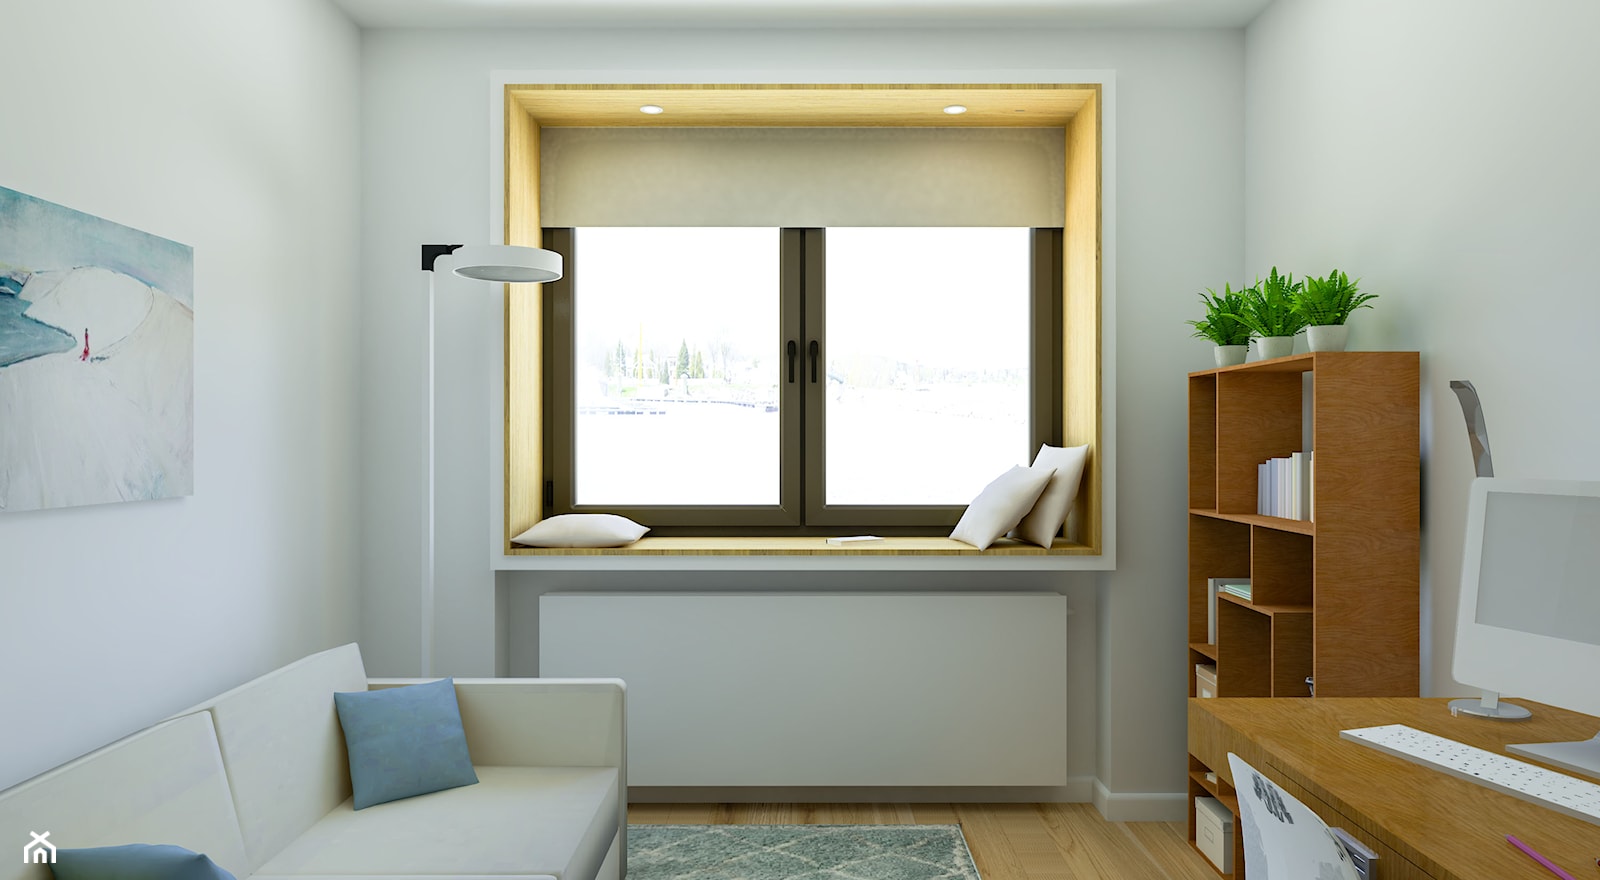 Pokój do pracy w mieszkaniu prywatnym - Małe w osobnym pomieszczeniu z sofą z zabudowanym biurkiem szare biuro, styl skandynawski - zdjęcie od Creatovnia - Homebook